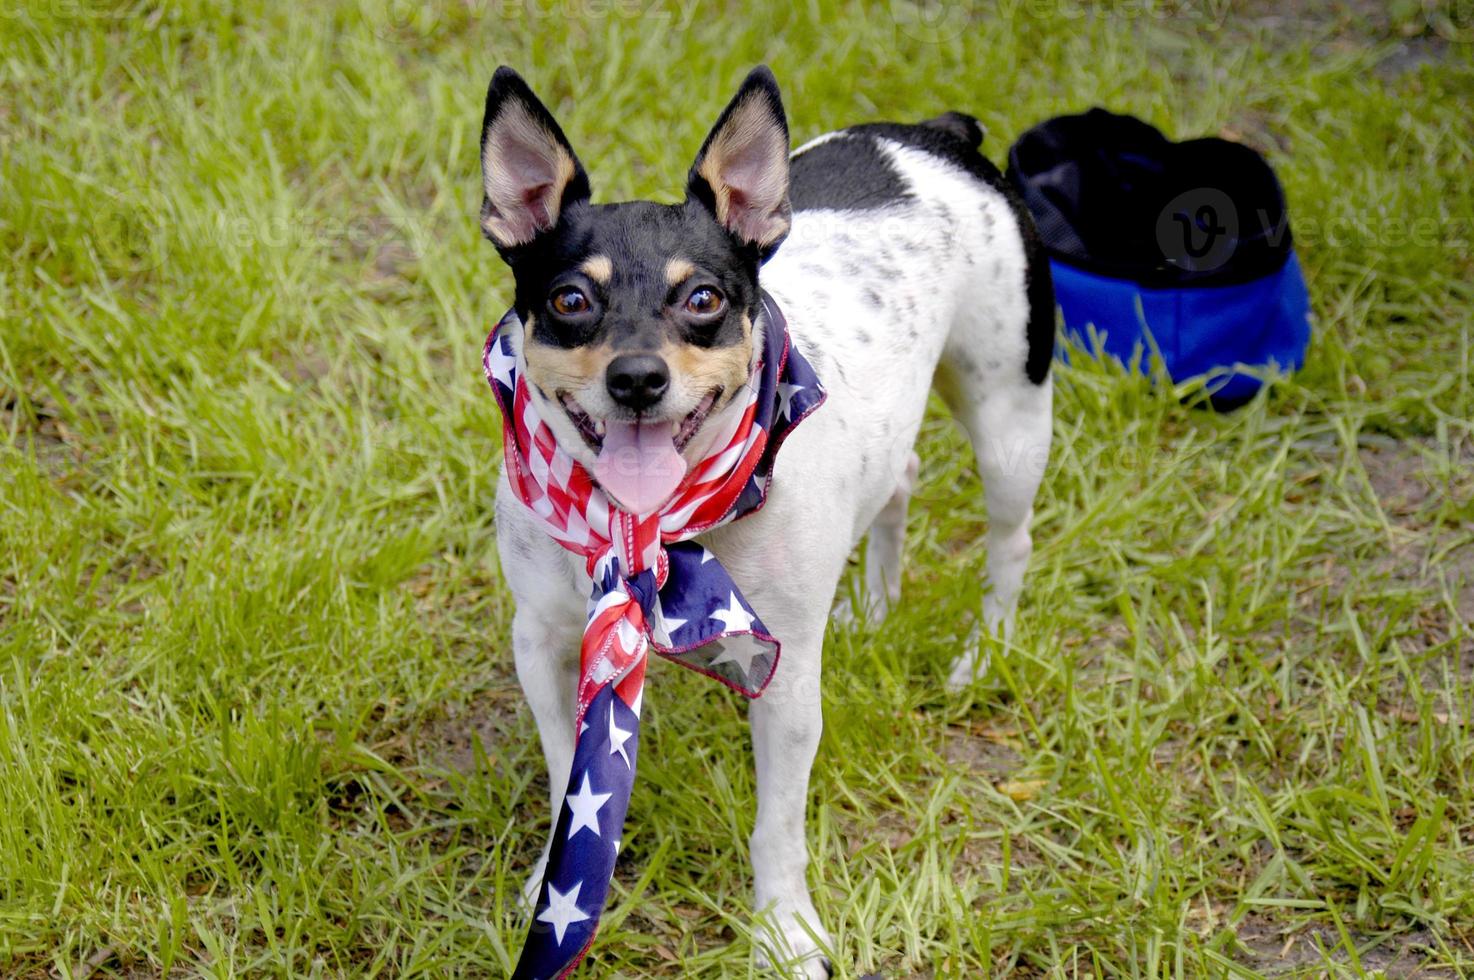 Ein kleiner Rattenterrier am 4. Juli mit einem Bandana der amerikanischen Flagge, der uns ein patriotisches Porträt gibt. foto